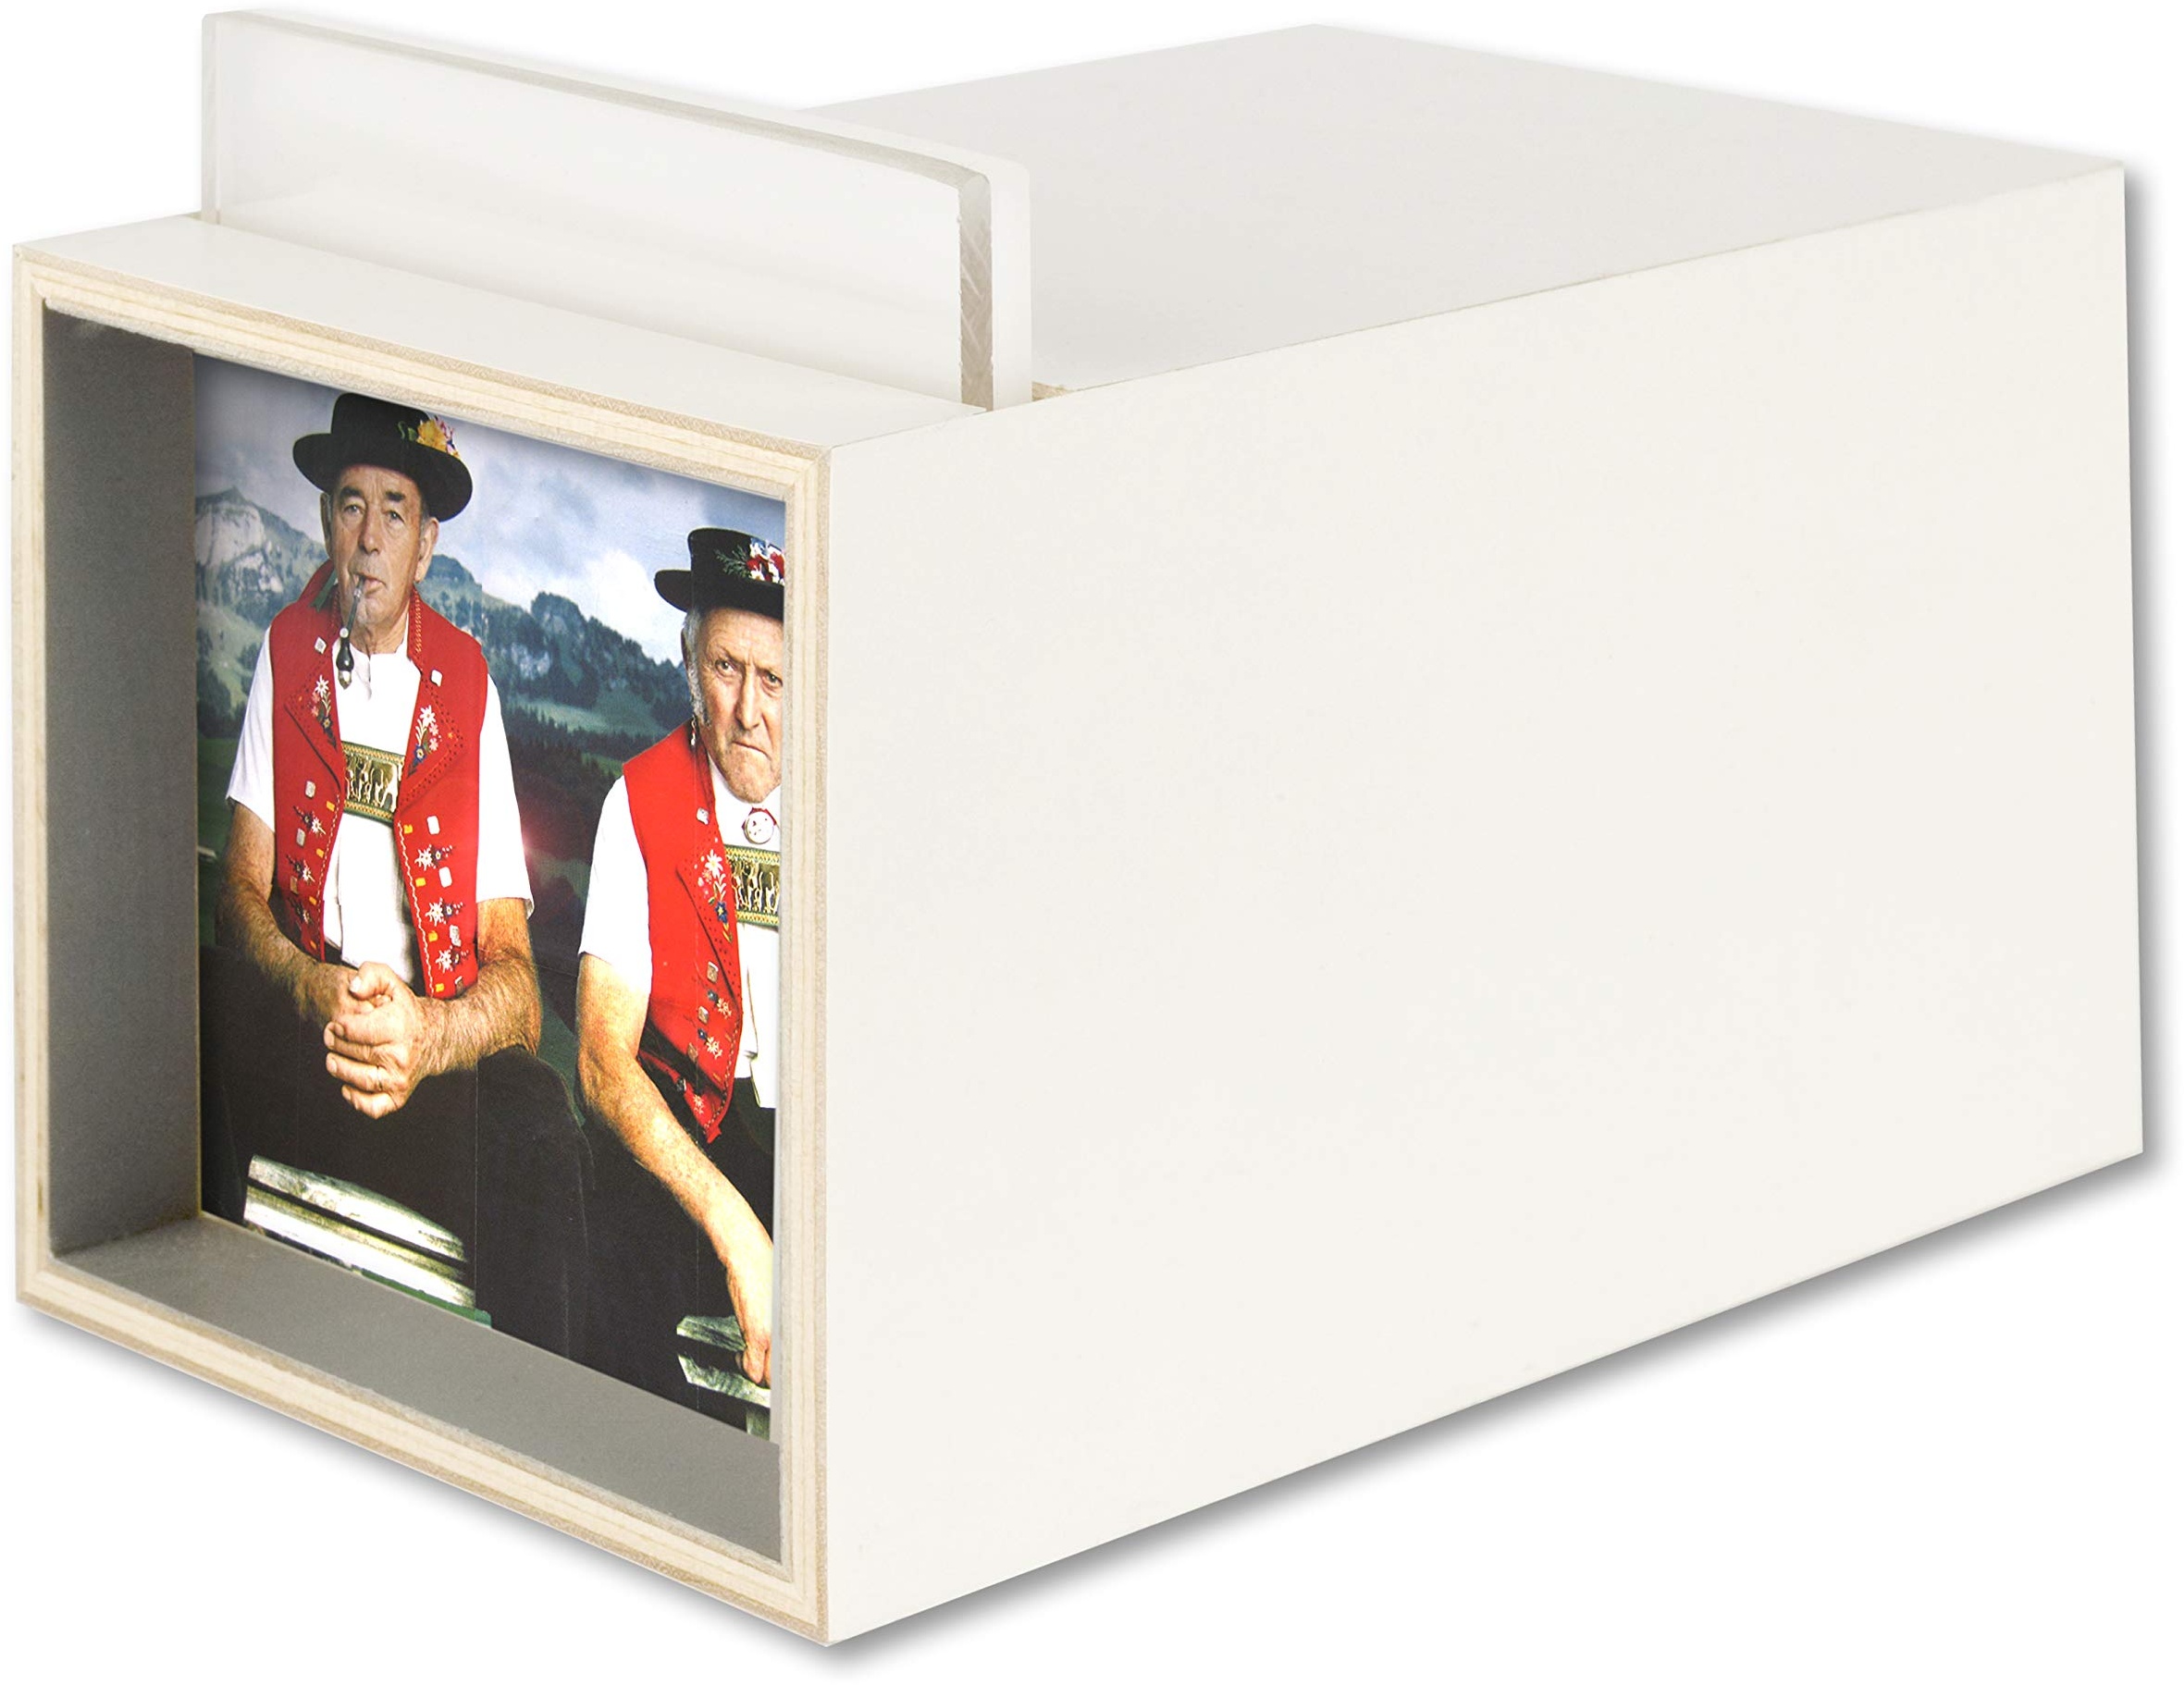 GURU SHOP Mini Leuchtkasten, Bilderleuchte, Beleuchteter Bilderrahmen, Minikomat - Weiß, 8x8x14 cm, Bilder & Bilderrahmen